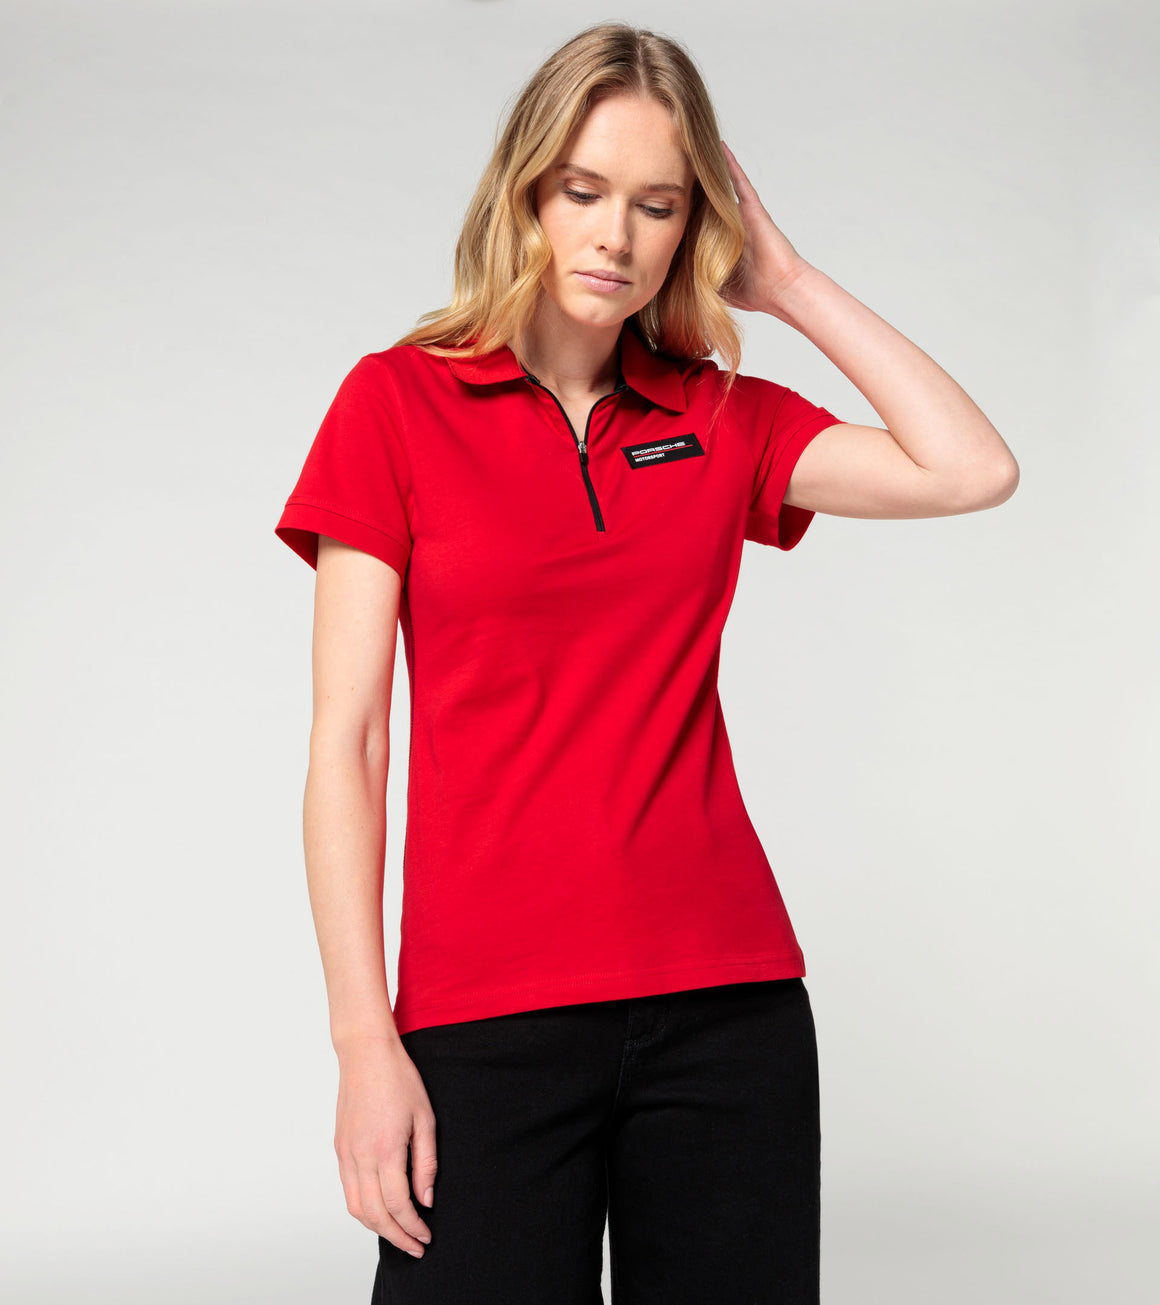 Women's polo shirt – Motorsport Fanwear